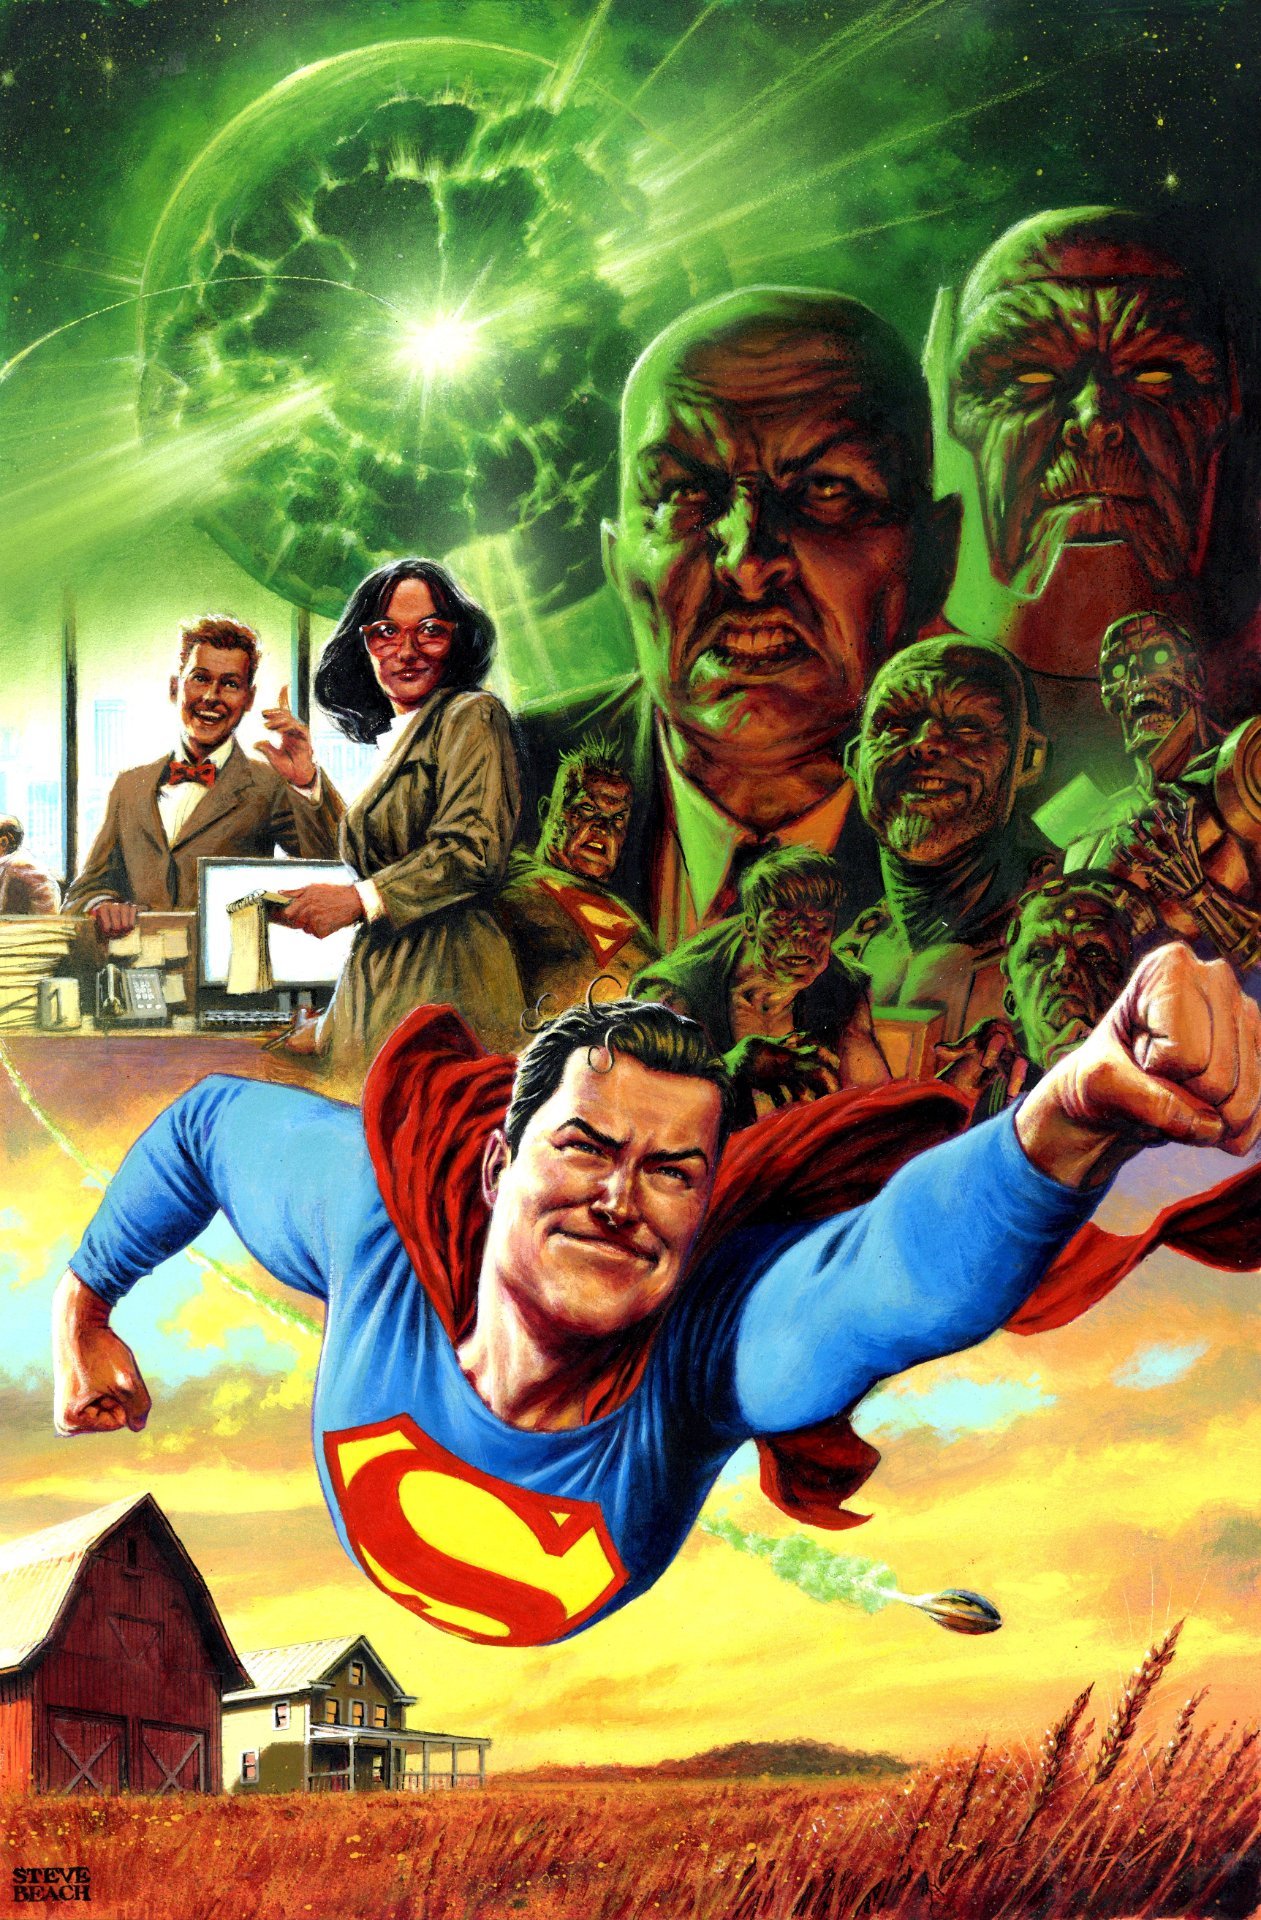 Cover di Action Comics #1047 di Steve Beach, prima parte del crossover con Superman: Son of Kal-El